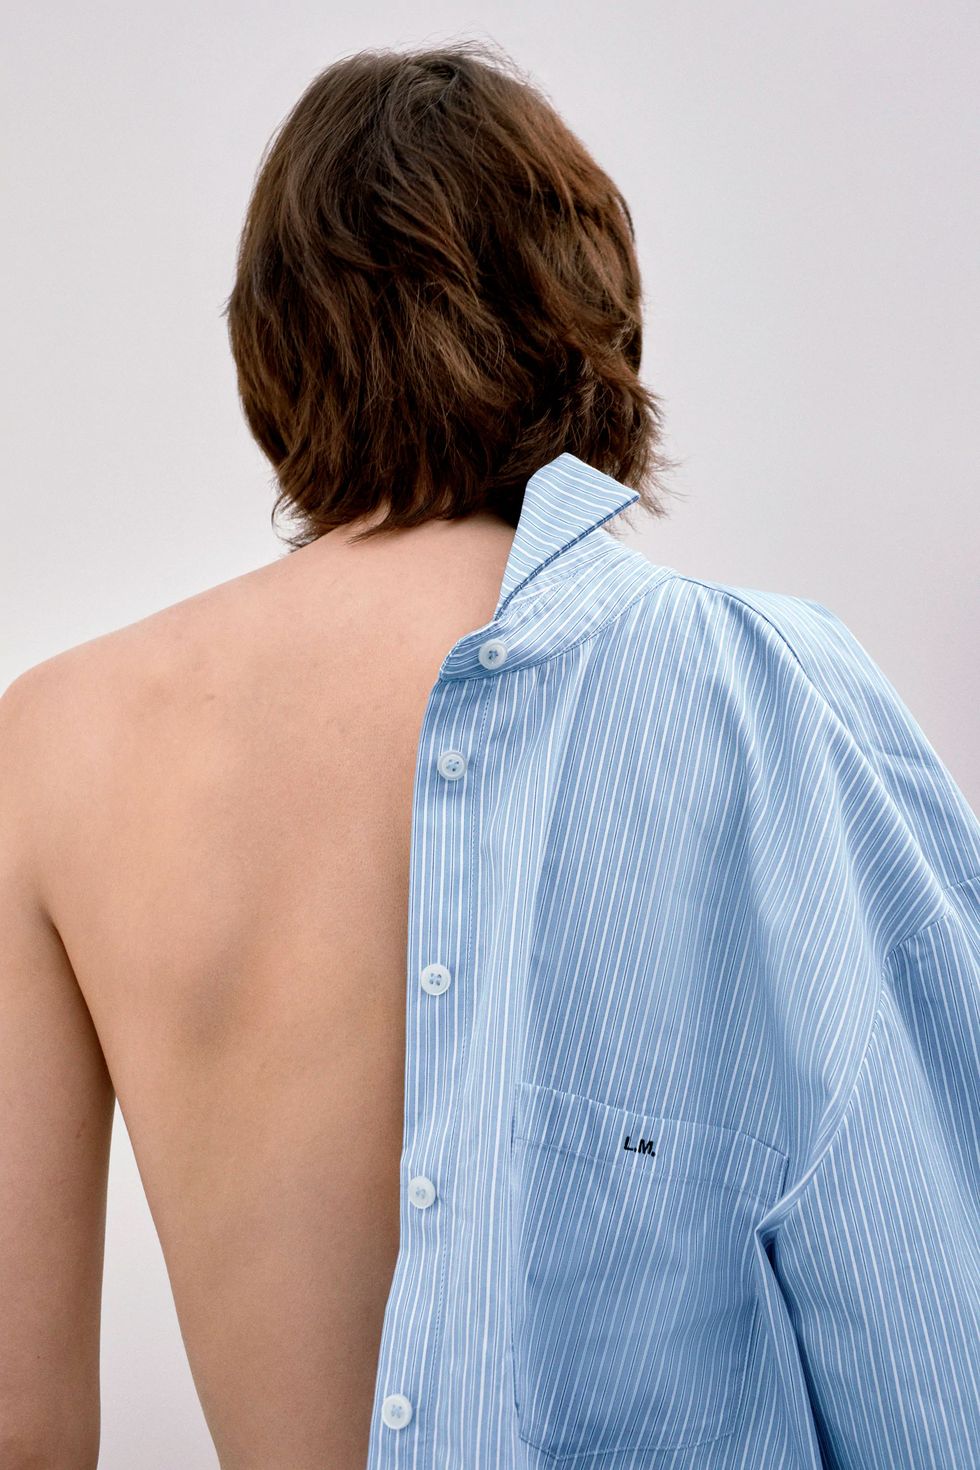 Camisas de mujer personalizables iniciales:lo Zara